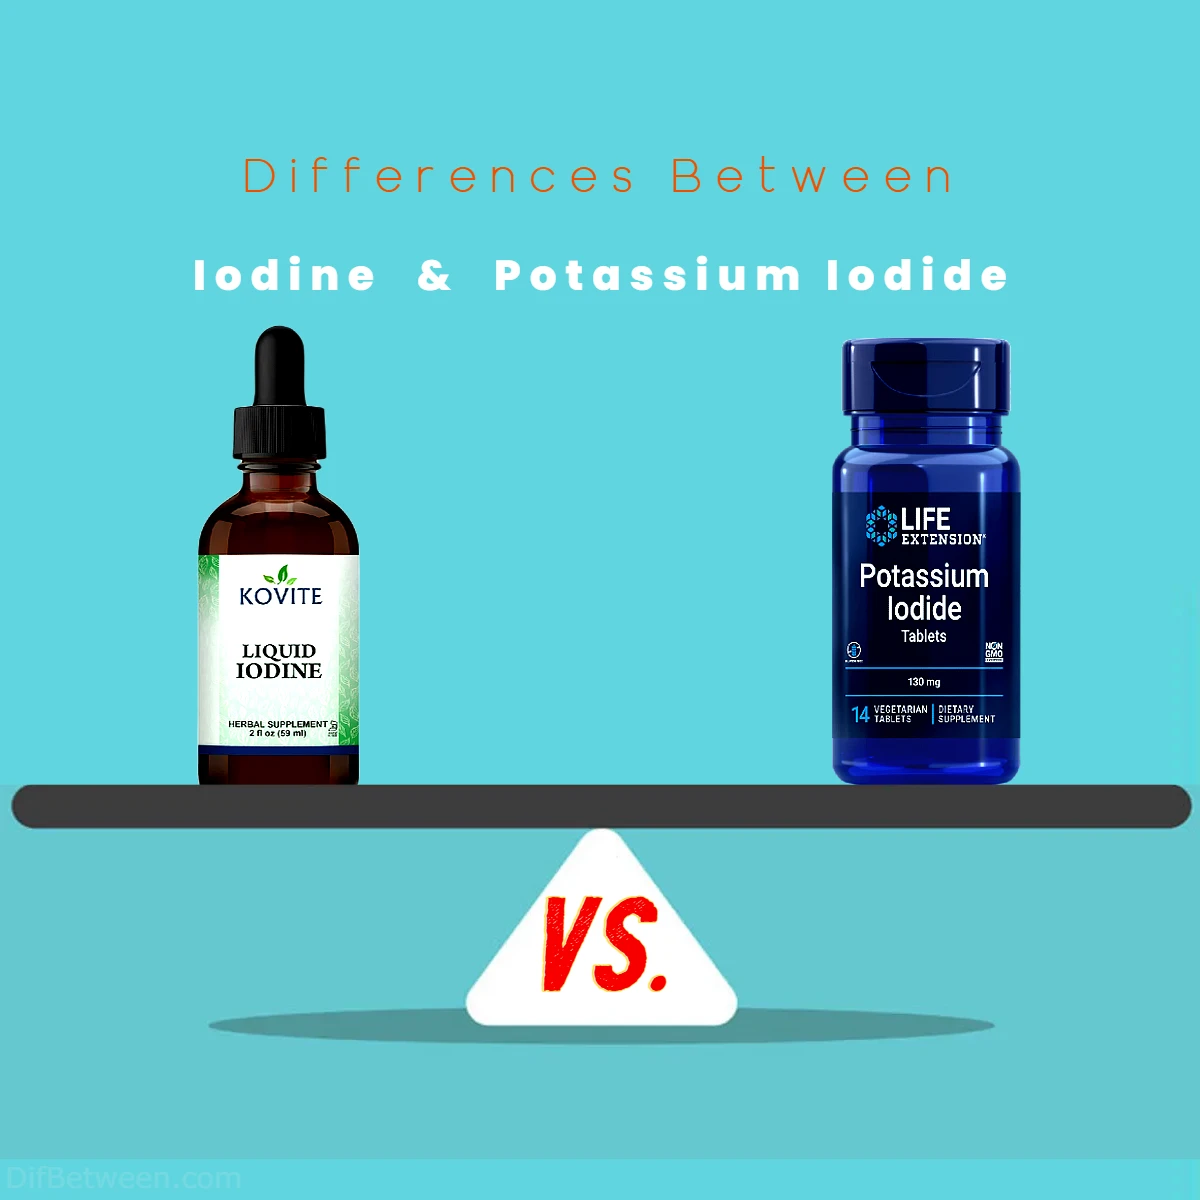 Differences Between Iodine vs Potassium Iodide